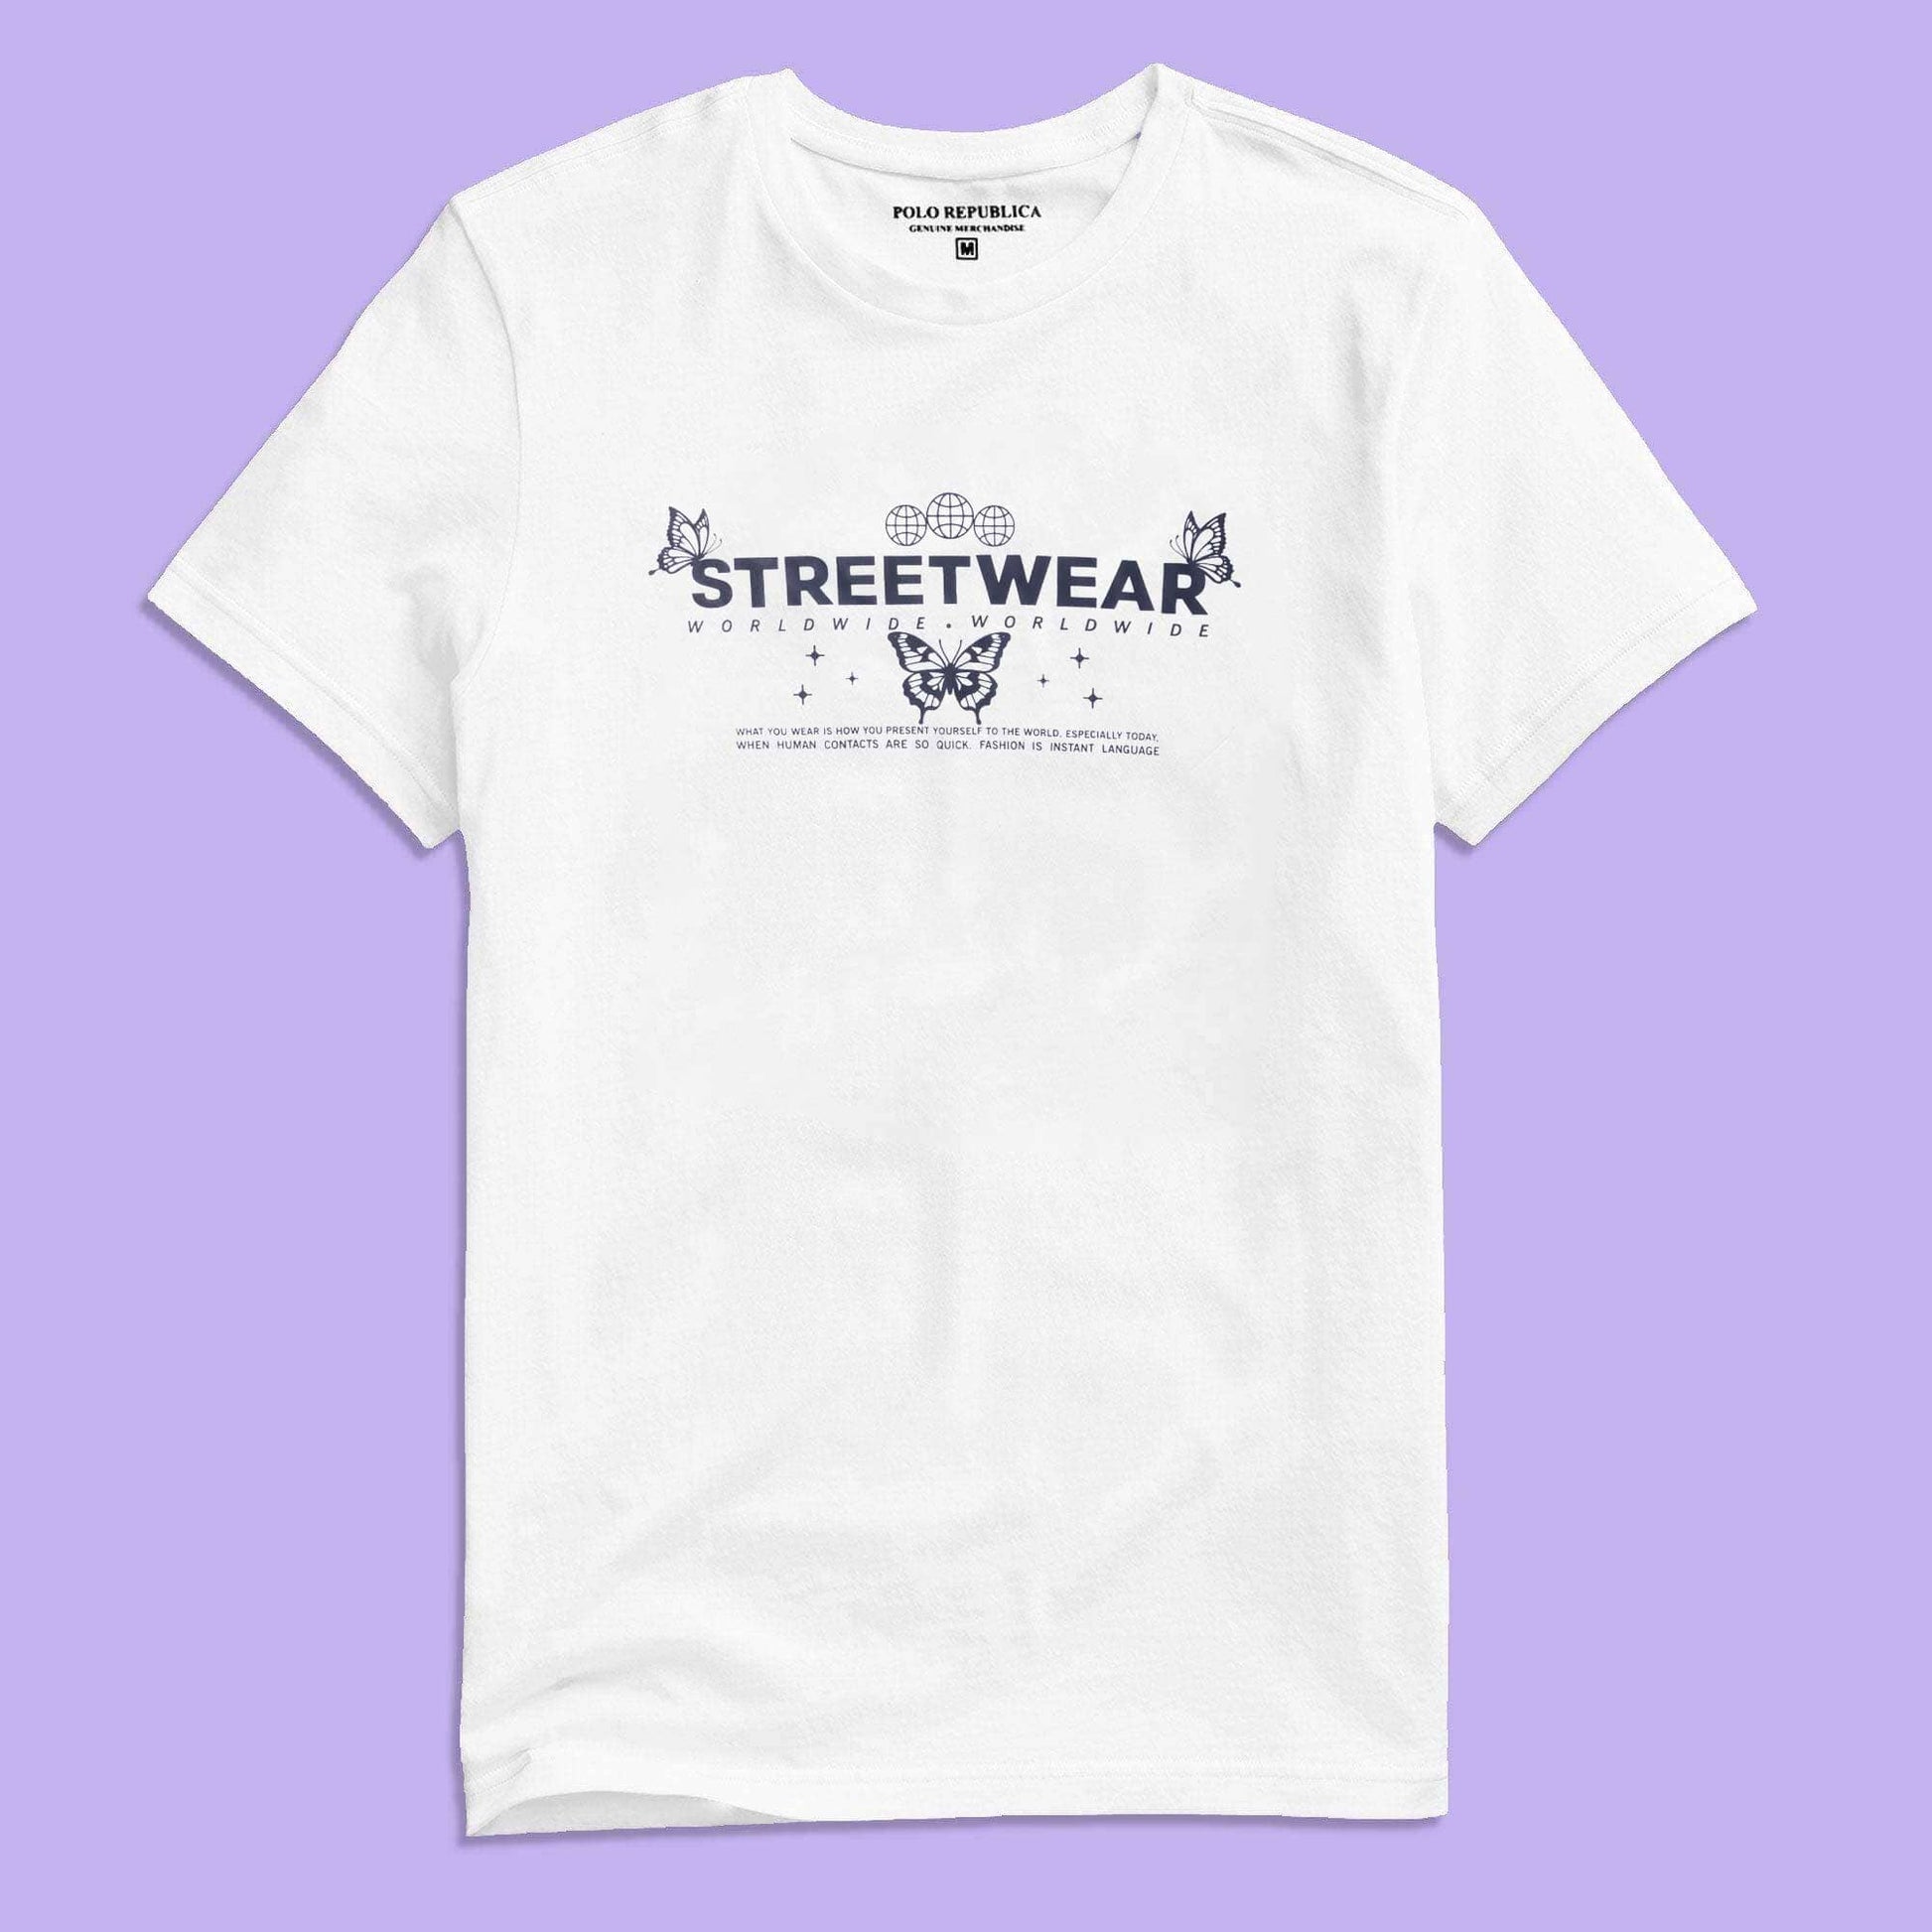 Polo Republica Men's Streetwear World Wide Printed Crew Neck Tee Shirt Men's Tee Shirt Polo Republica 